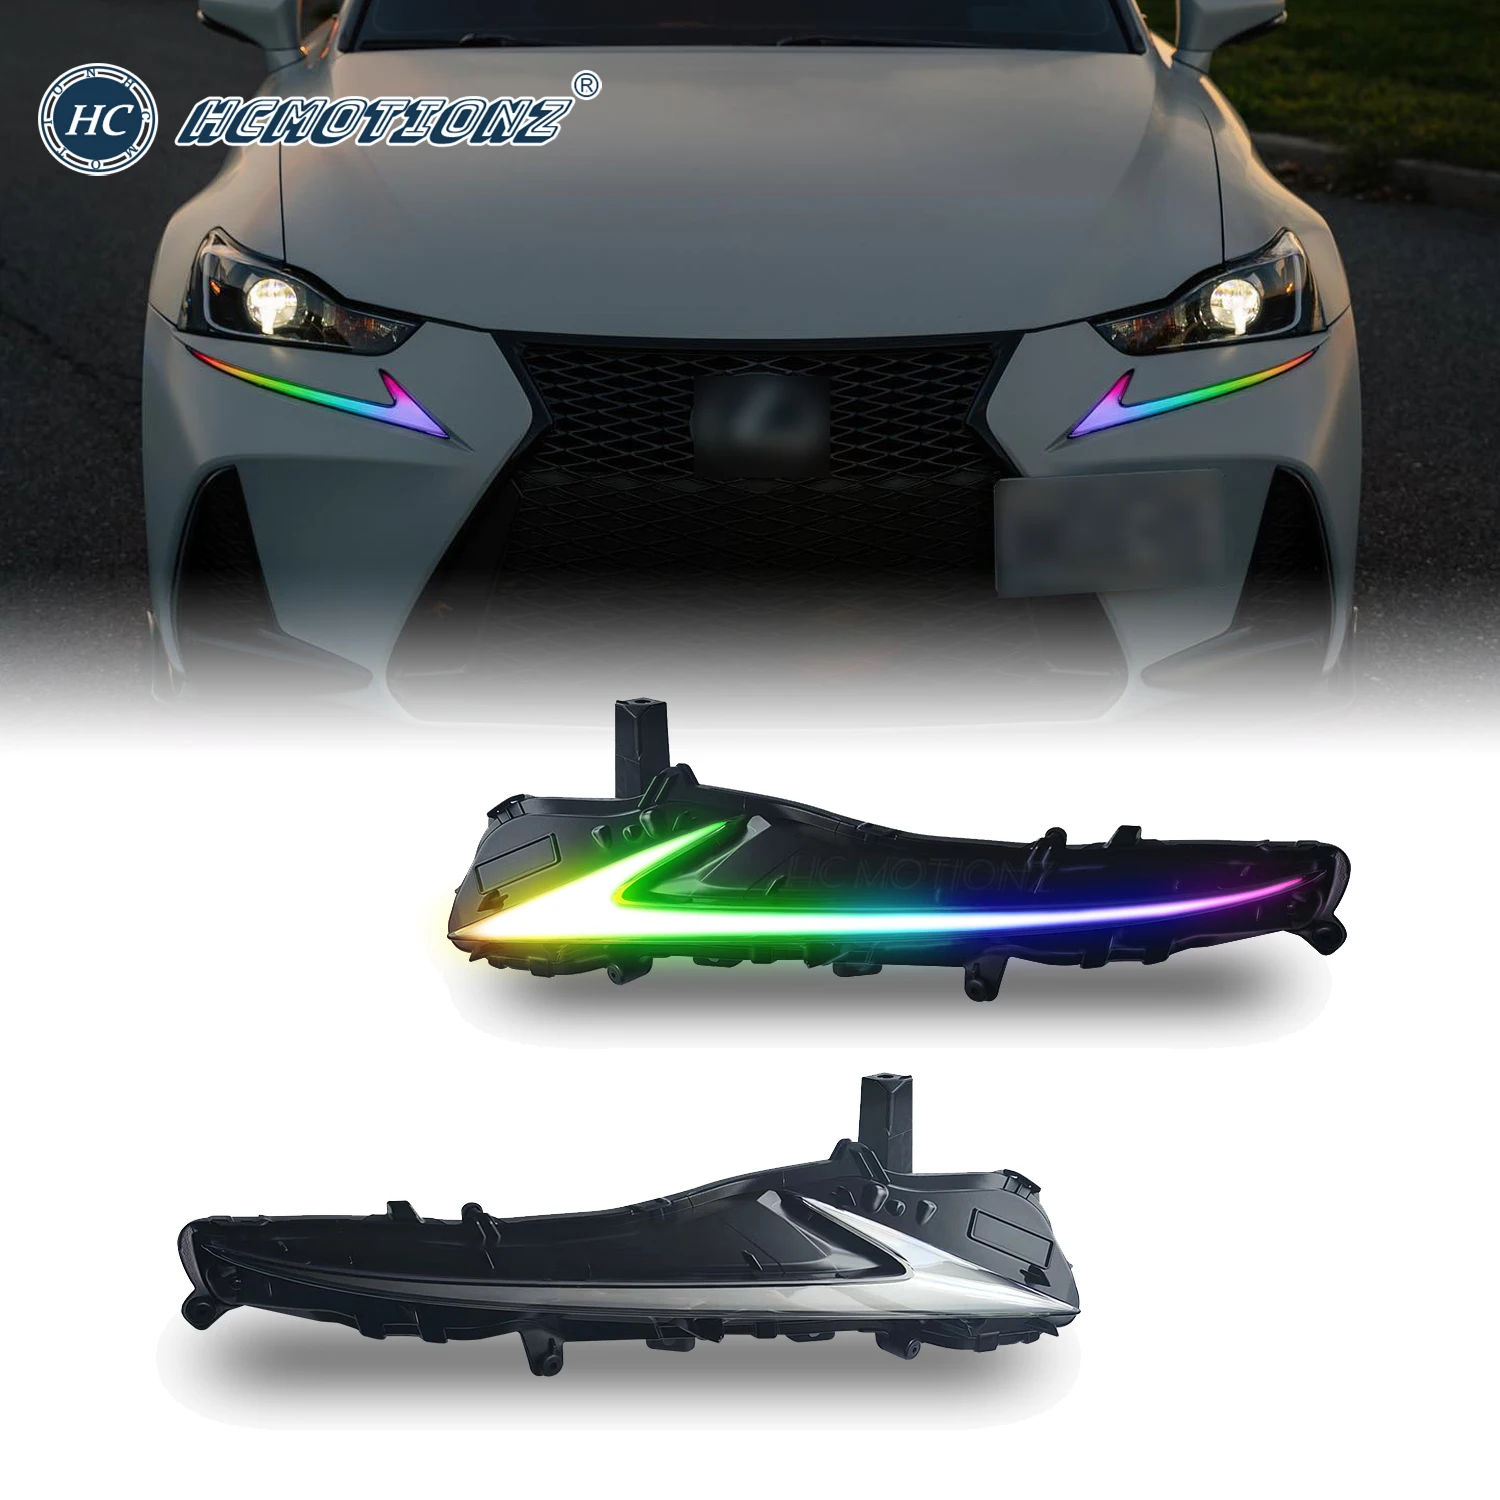 Door Dynamics Elite Series Fog Lights : r/Lexus